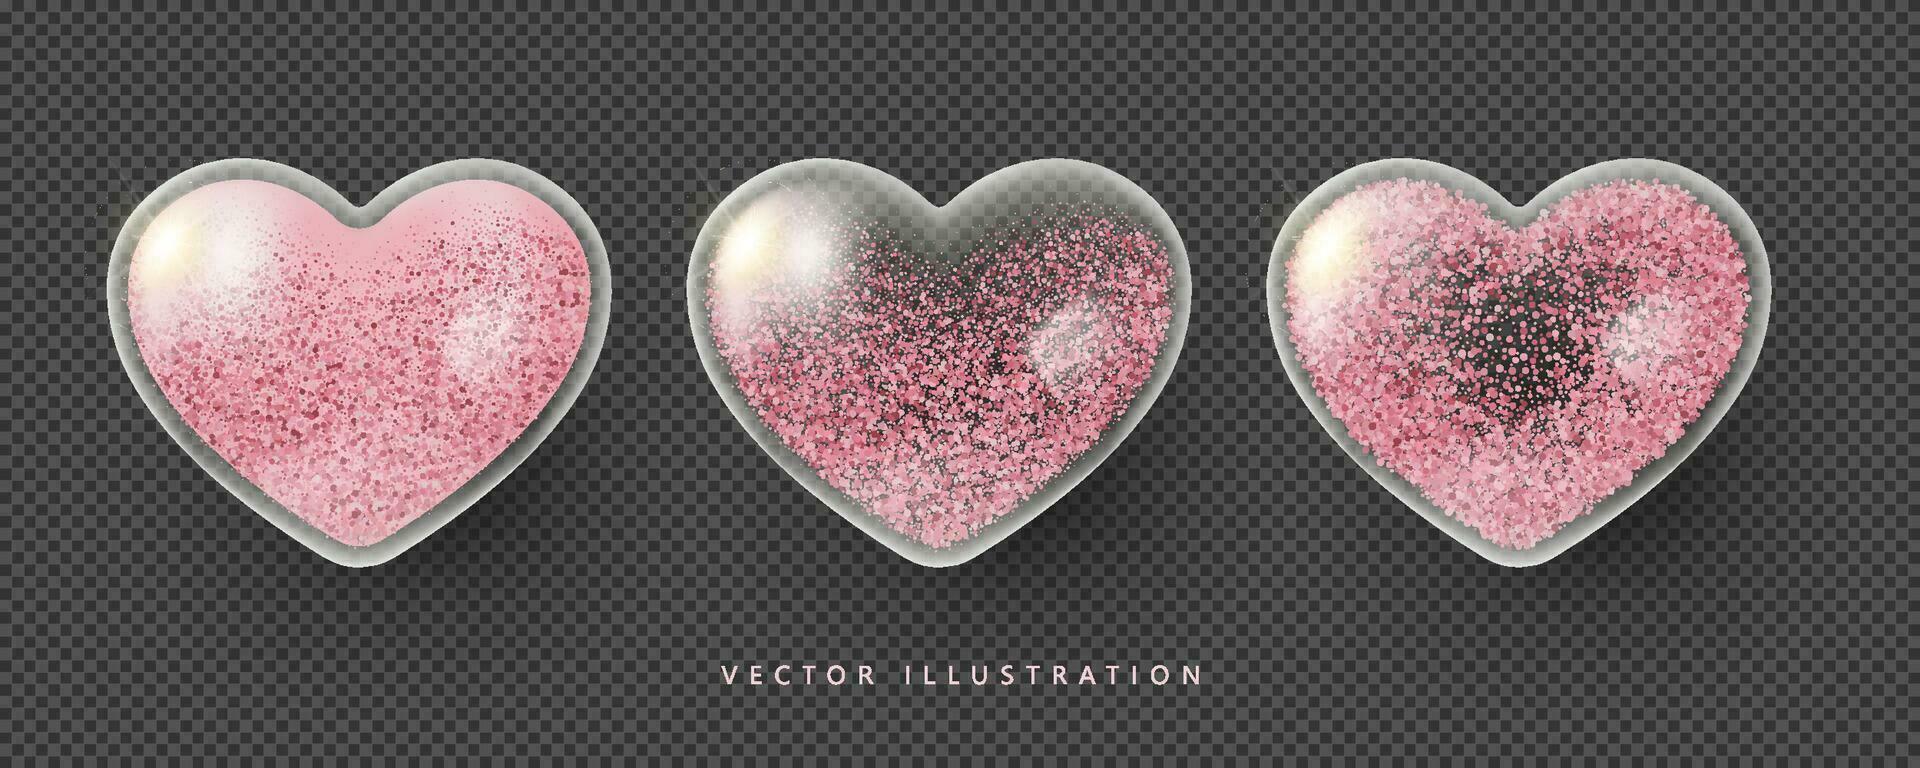 realistisk rosa transparent glas hjärtan med glitter. symbol av kärlek, vara min alla hjärtans dag. vektor illustration i 3d stil